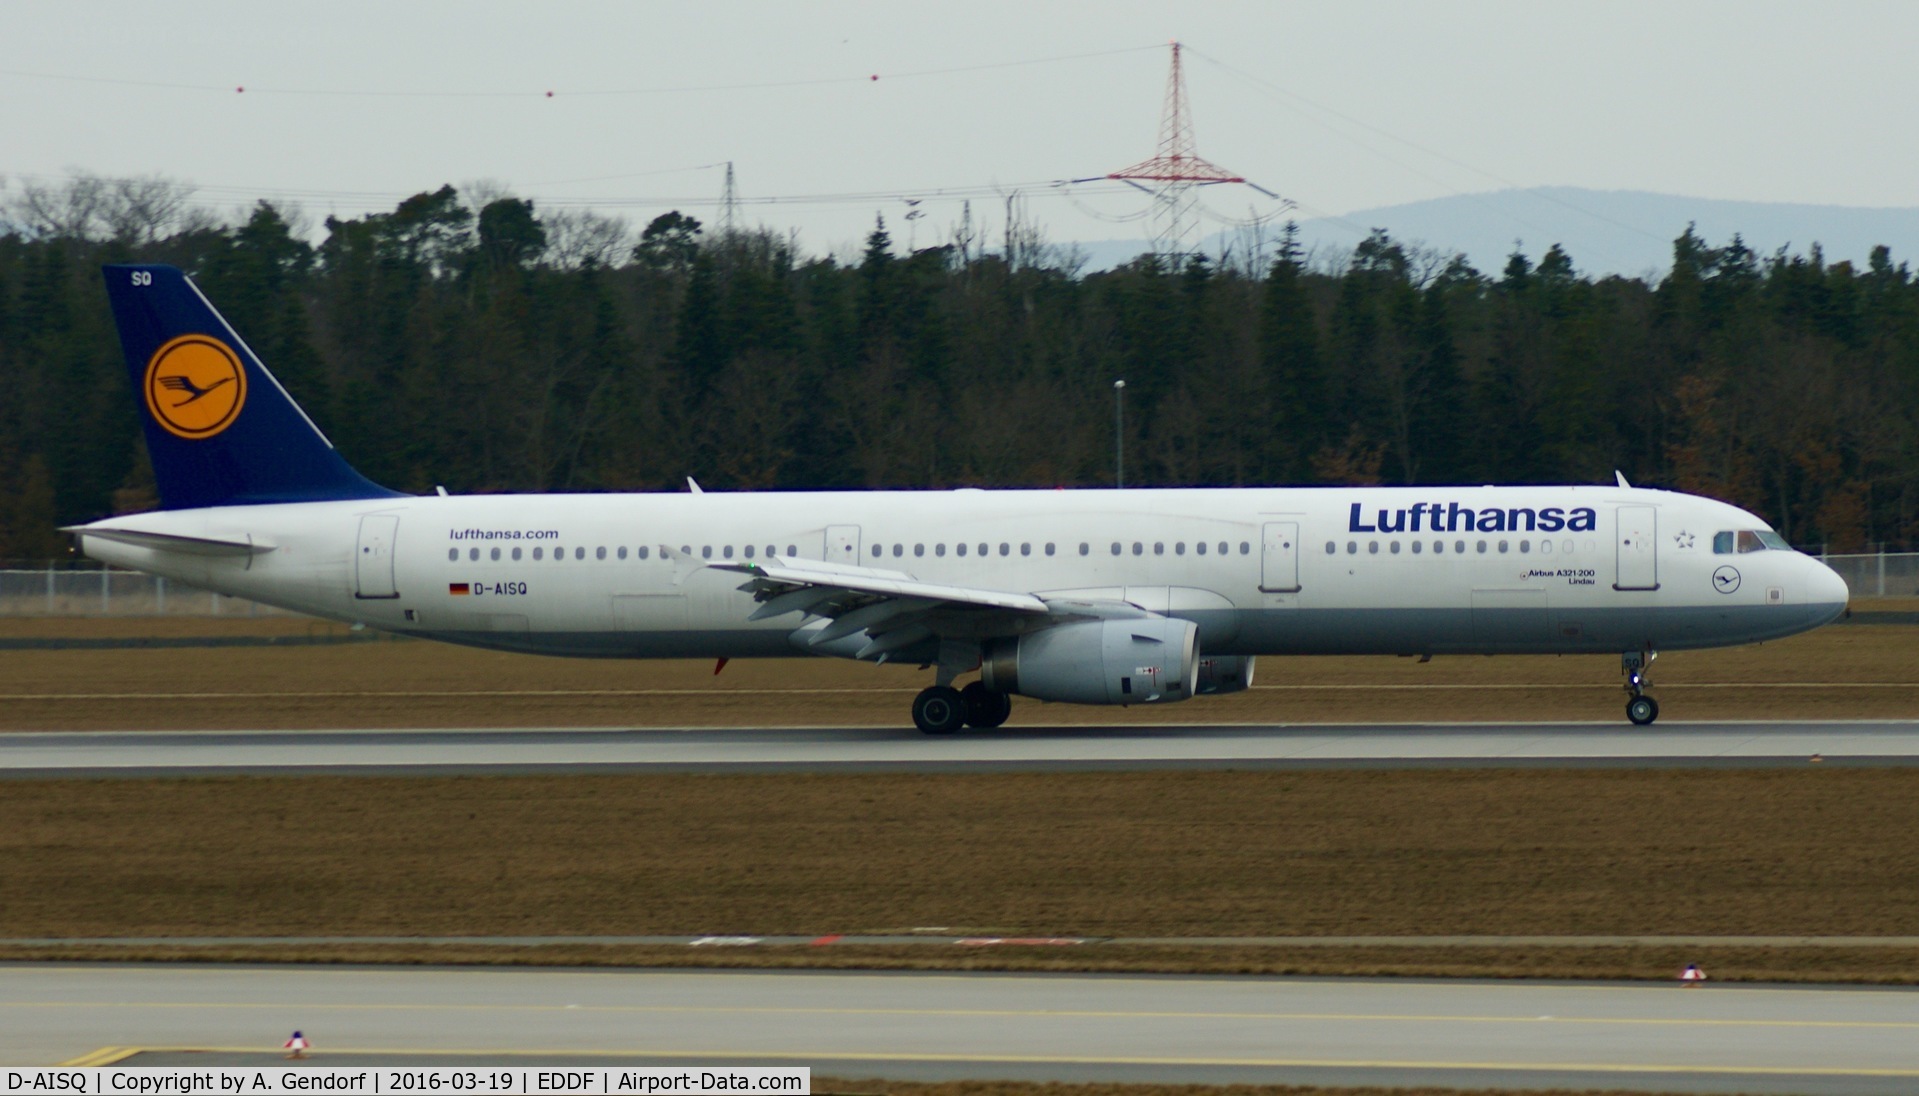 D-AISQ, 2009 Airbus A321-231 C/N 3936, Lufthansa, seen here shortly after landing at Frankfurt Rhein/Main(EDDF)